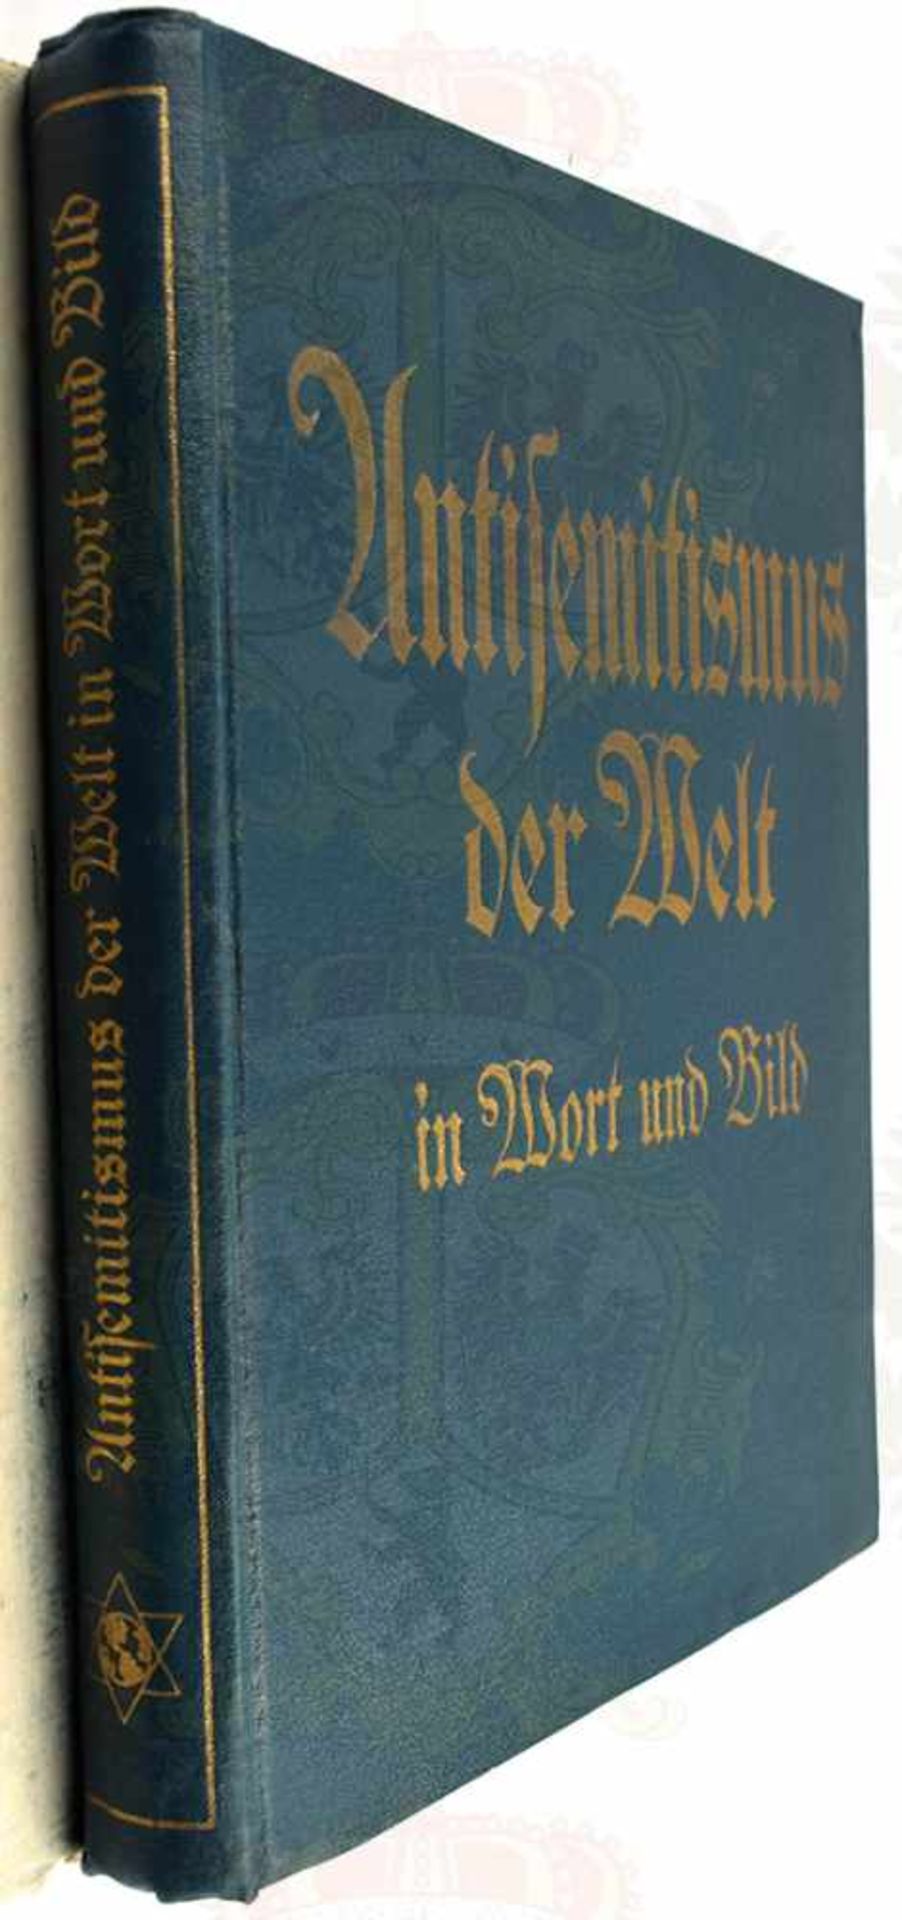 ANTISEMITISMUS DER WELT IN WORT UND BILD, T. Körber/R. Pugel, Dresden 1935, zahlr. Fotos u. Abb.,